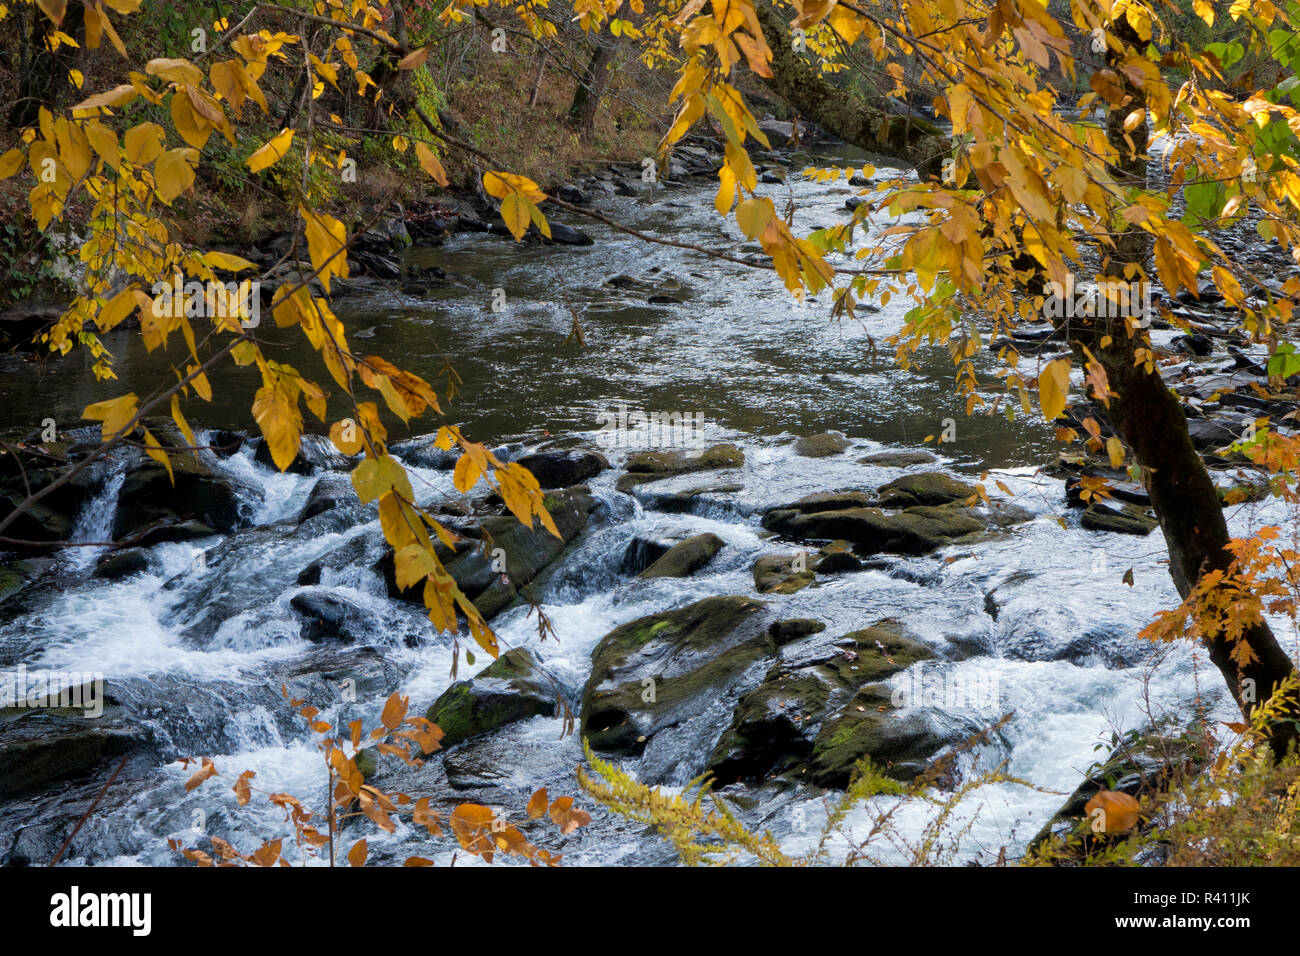 Nantahala River, Nantahala Gorge, near the Nantahala Outdoor Center. Bryson City, North Carolina Stock Photo